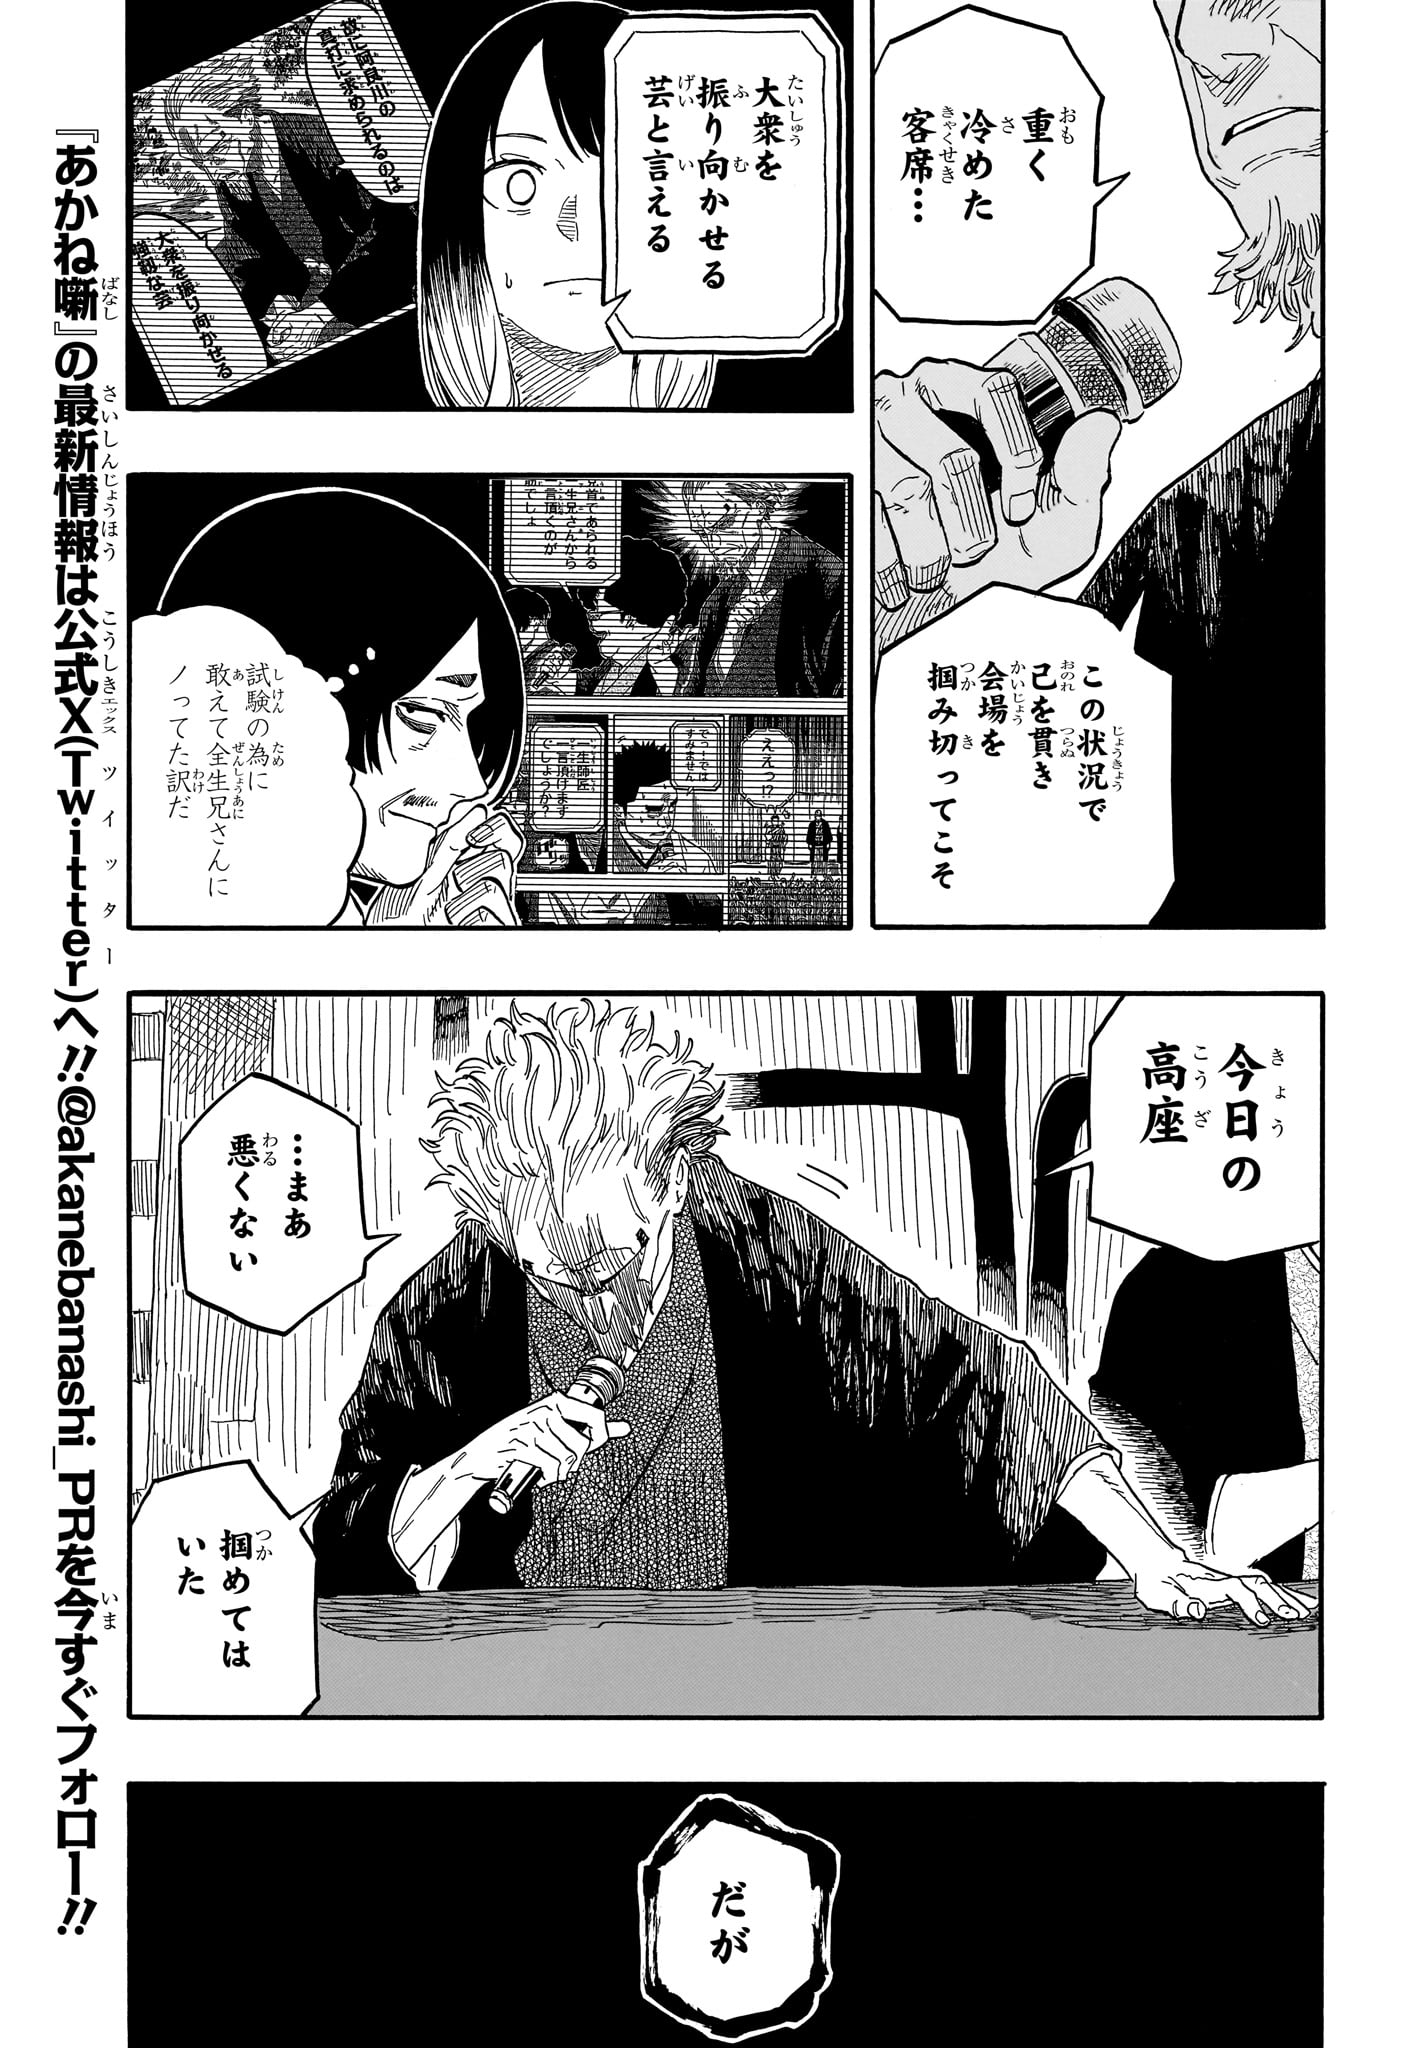 Akane-Banashi - Chapter 116 - Page 7